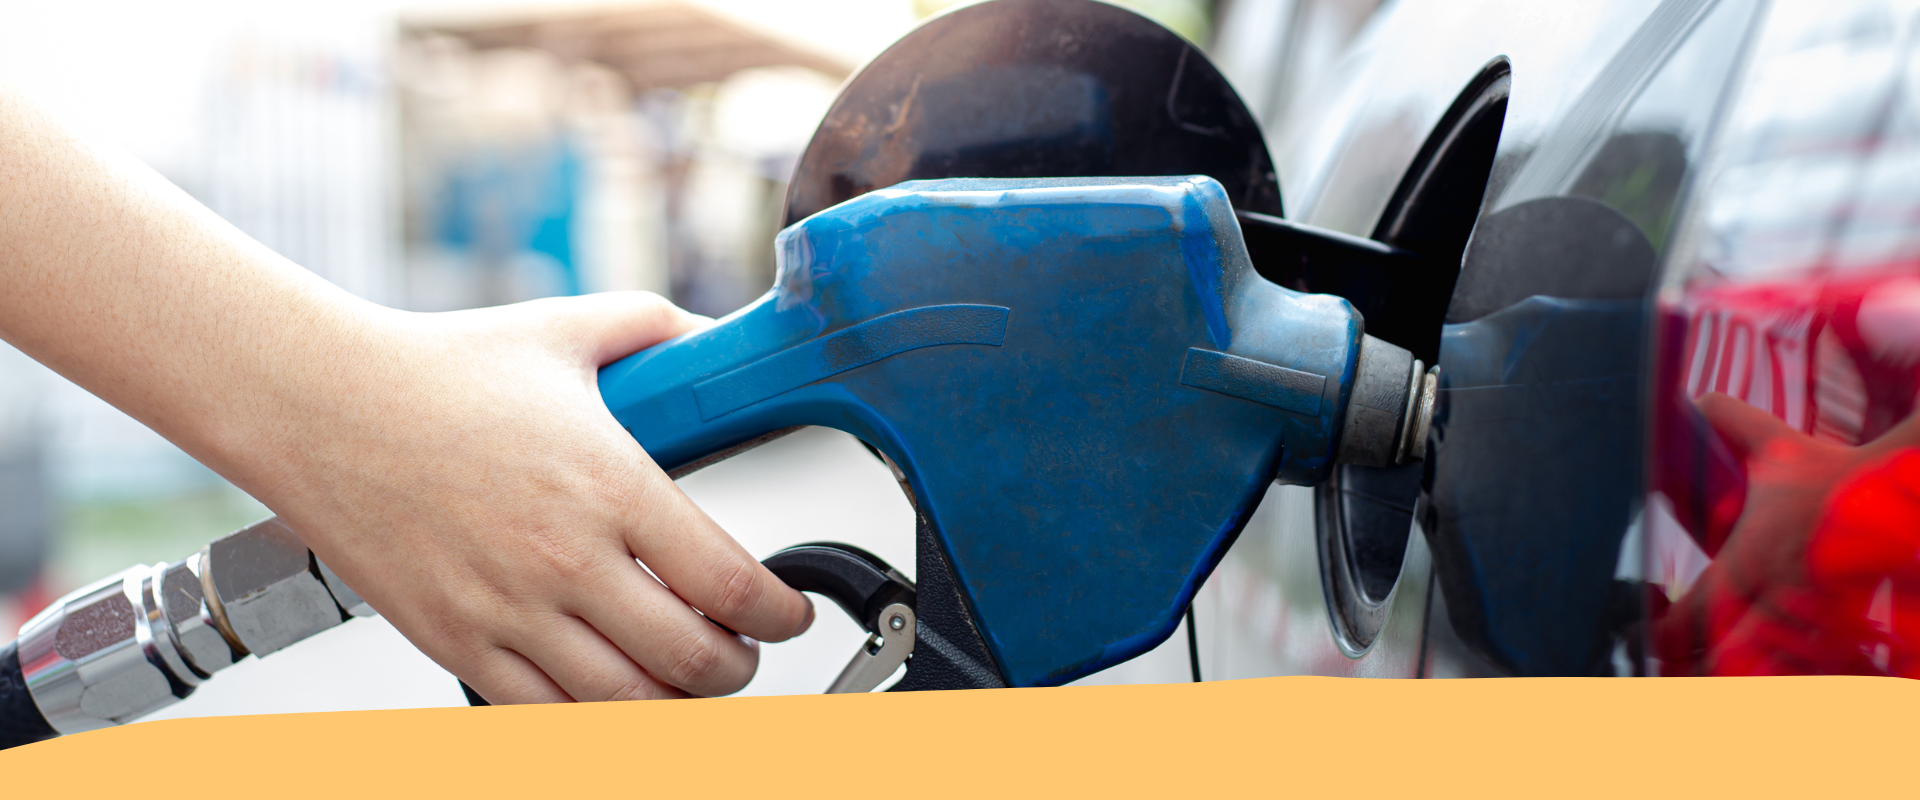 Caro carburante: proroga taglio delle accise (30 cent) fino al 18 novembre